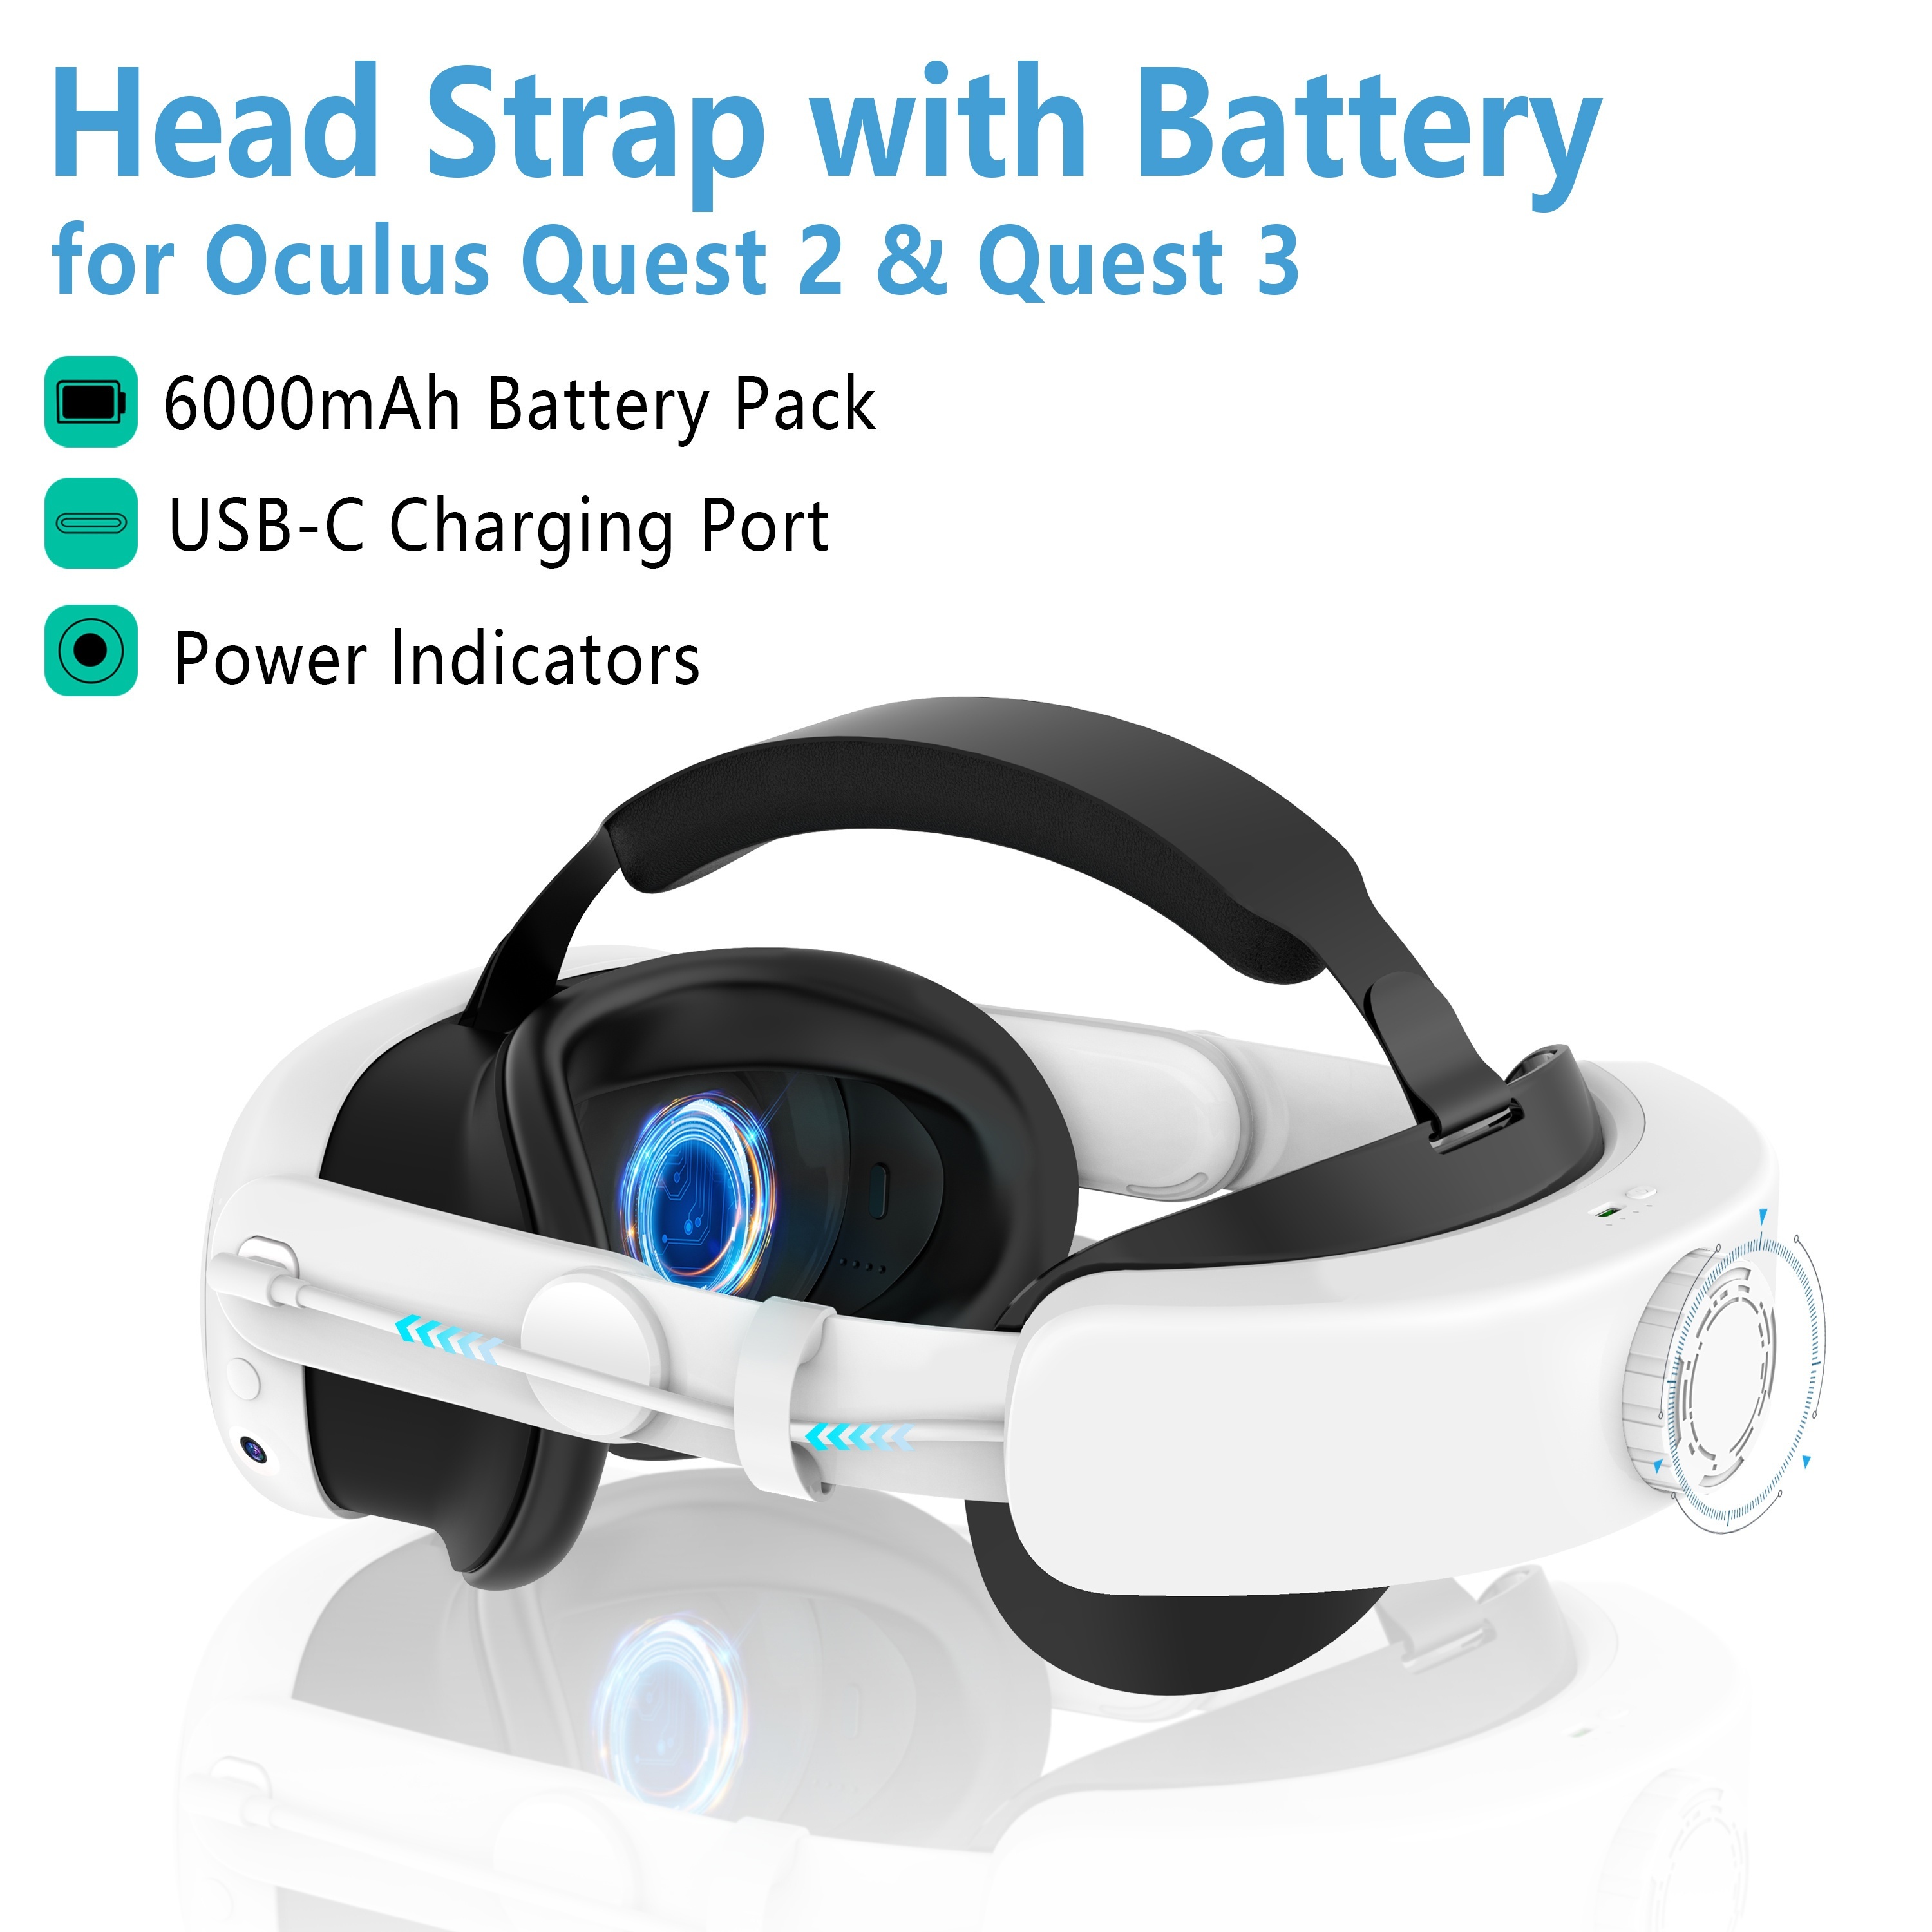 Oculus Quest 2 & Quest  3用バッテリー付きヘッドストラップ、6000mAh急速充電VR電源、カウンターバランス、VRの快適性を向上させる調整可能なヘッドストラップ  ハロウィーン/感謝祭/クリスマスギフト用